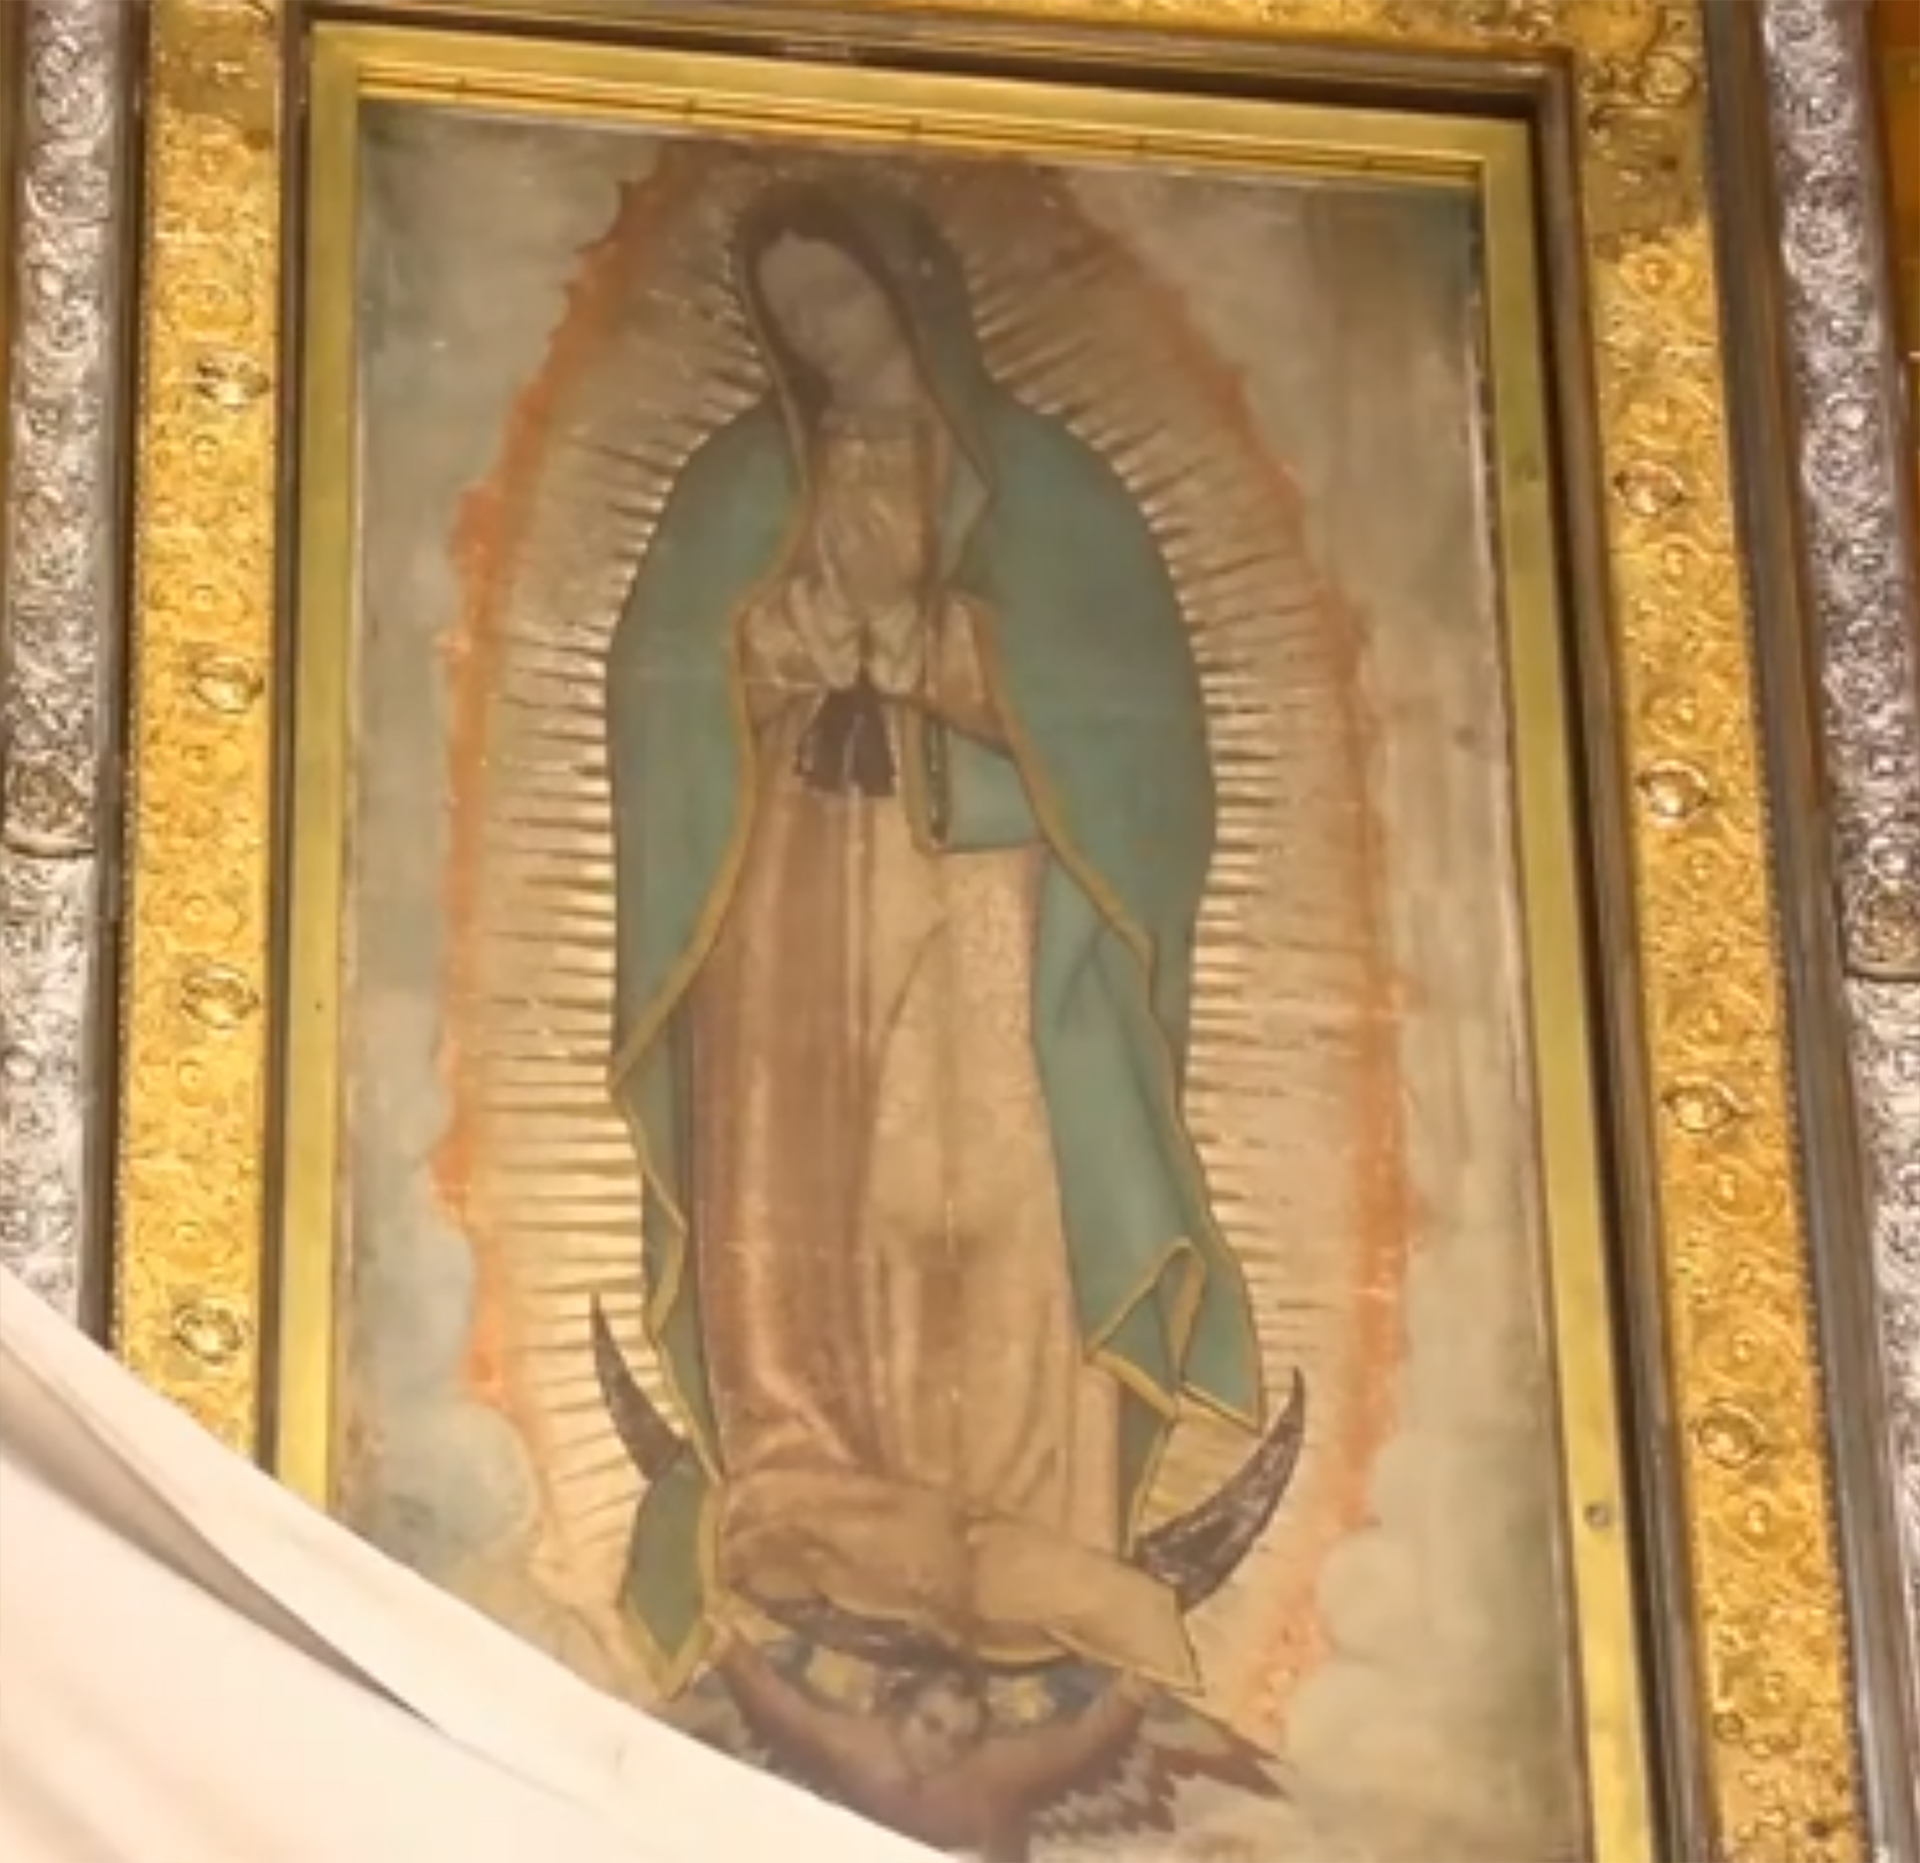 El cuadro en la Basílica de la Virgen de Guadalupe en México. La imagen ha sido objeto de estudios hasta de la NASA